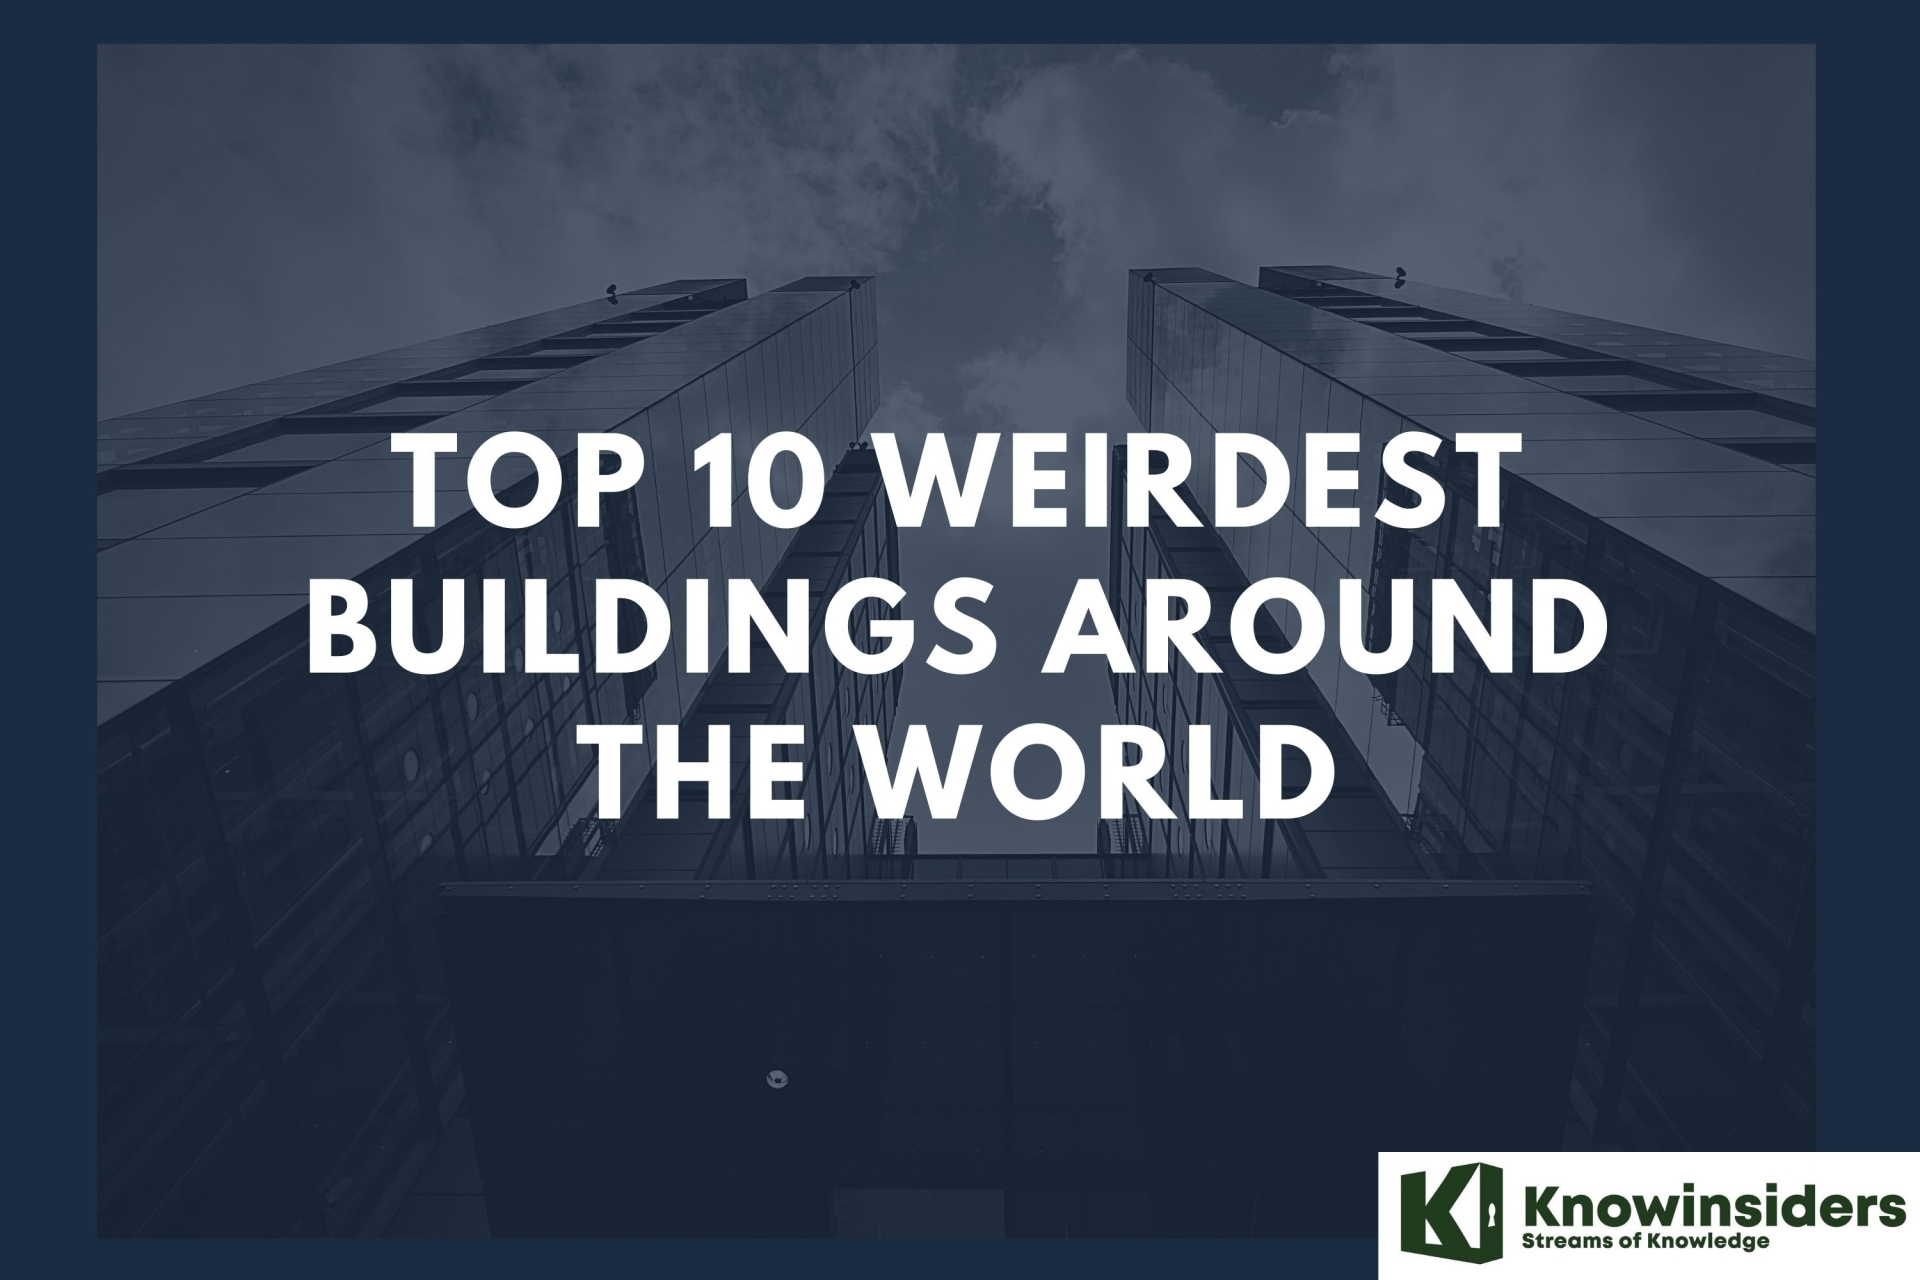 Top 10 Weirdest Buildings Around the World